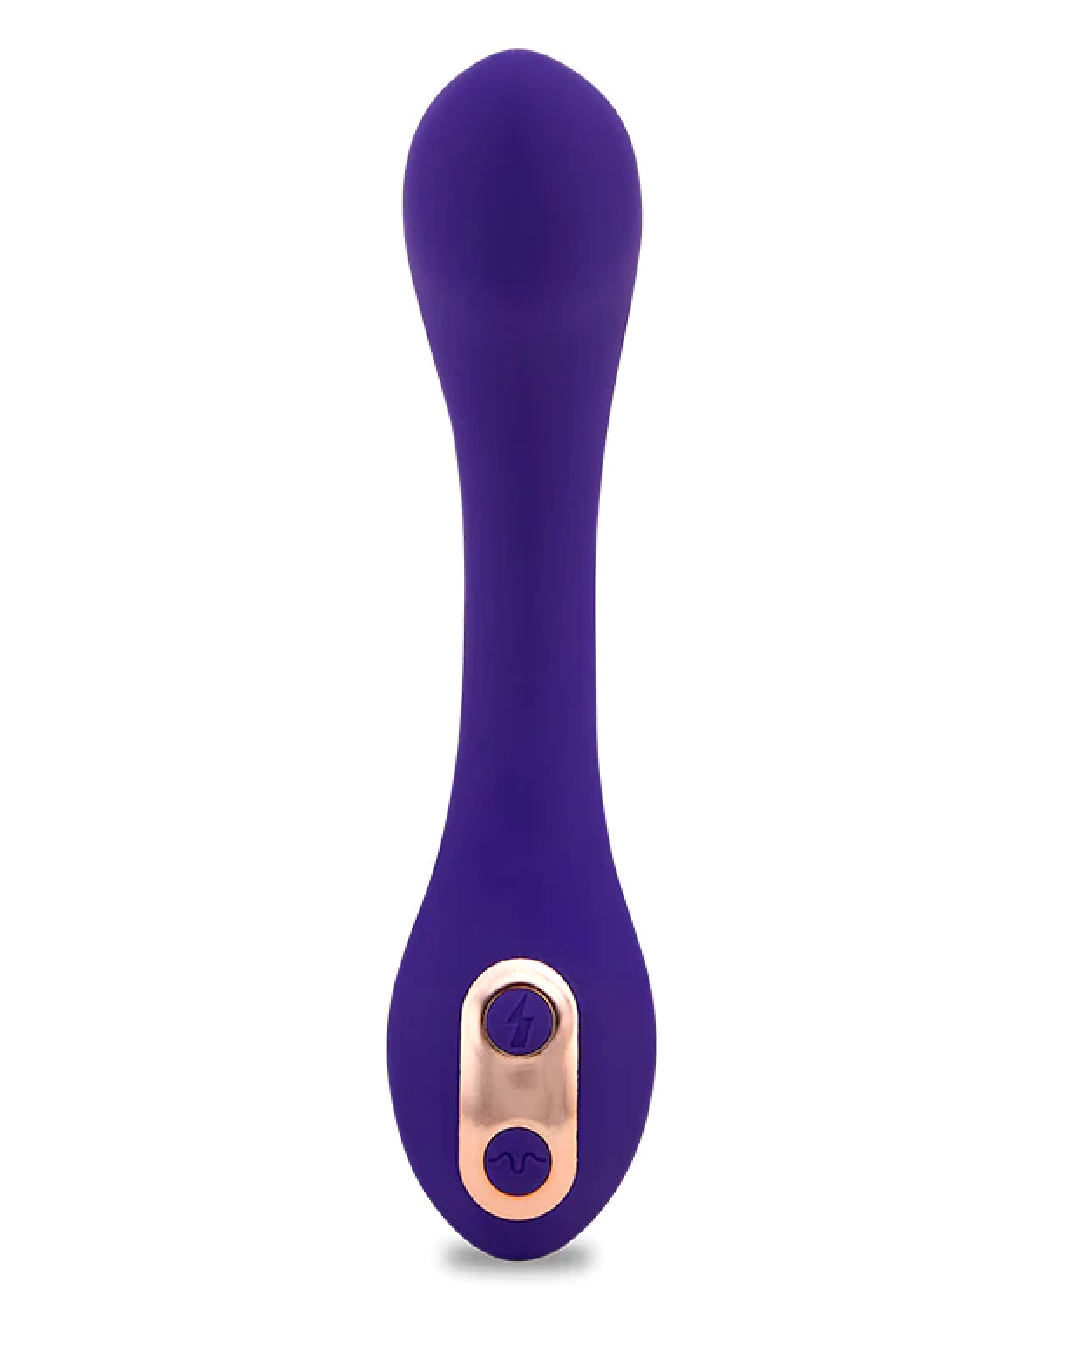 Sensuelle Libi Flexible G-Spot Vibrator - Purple upright